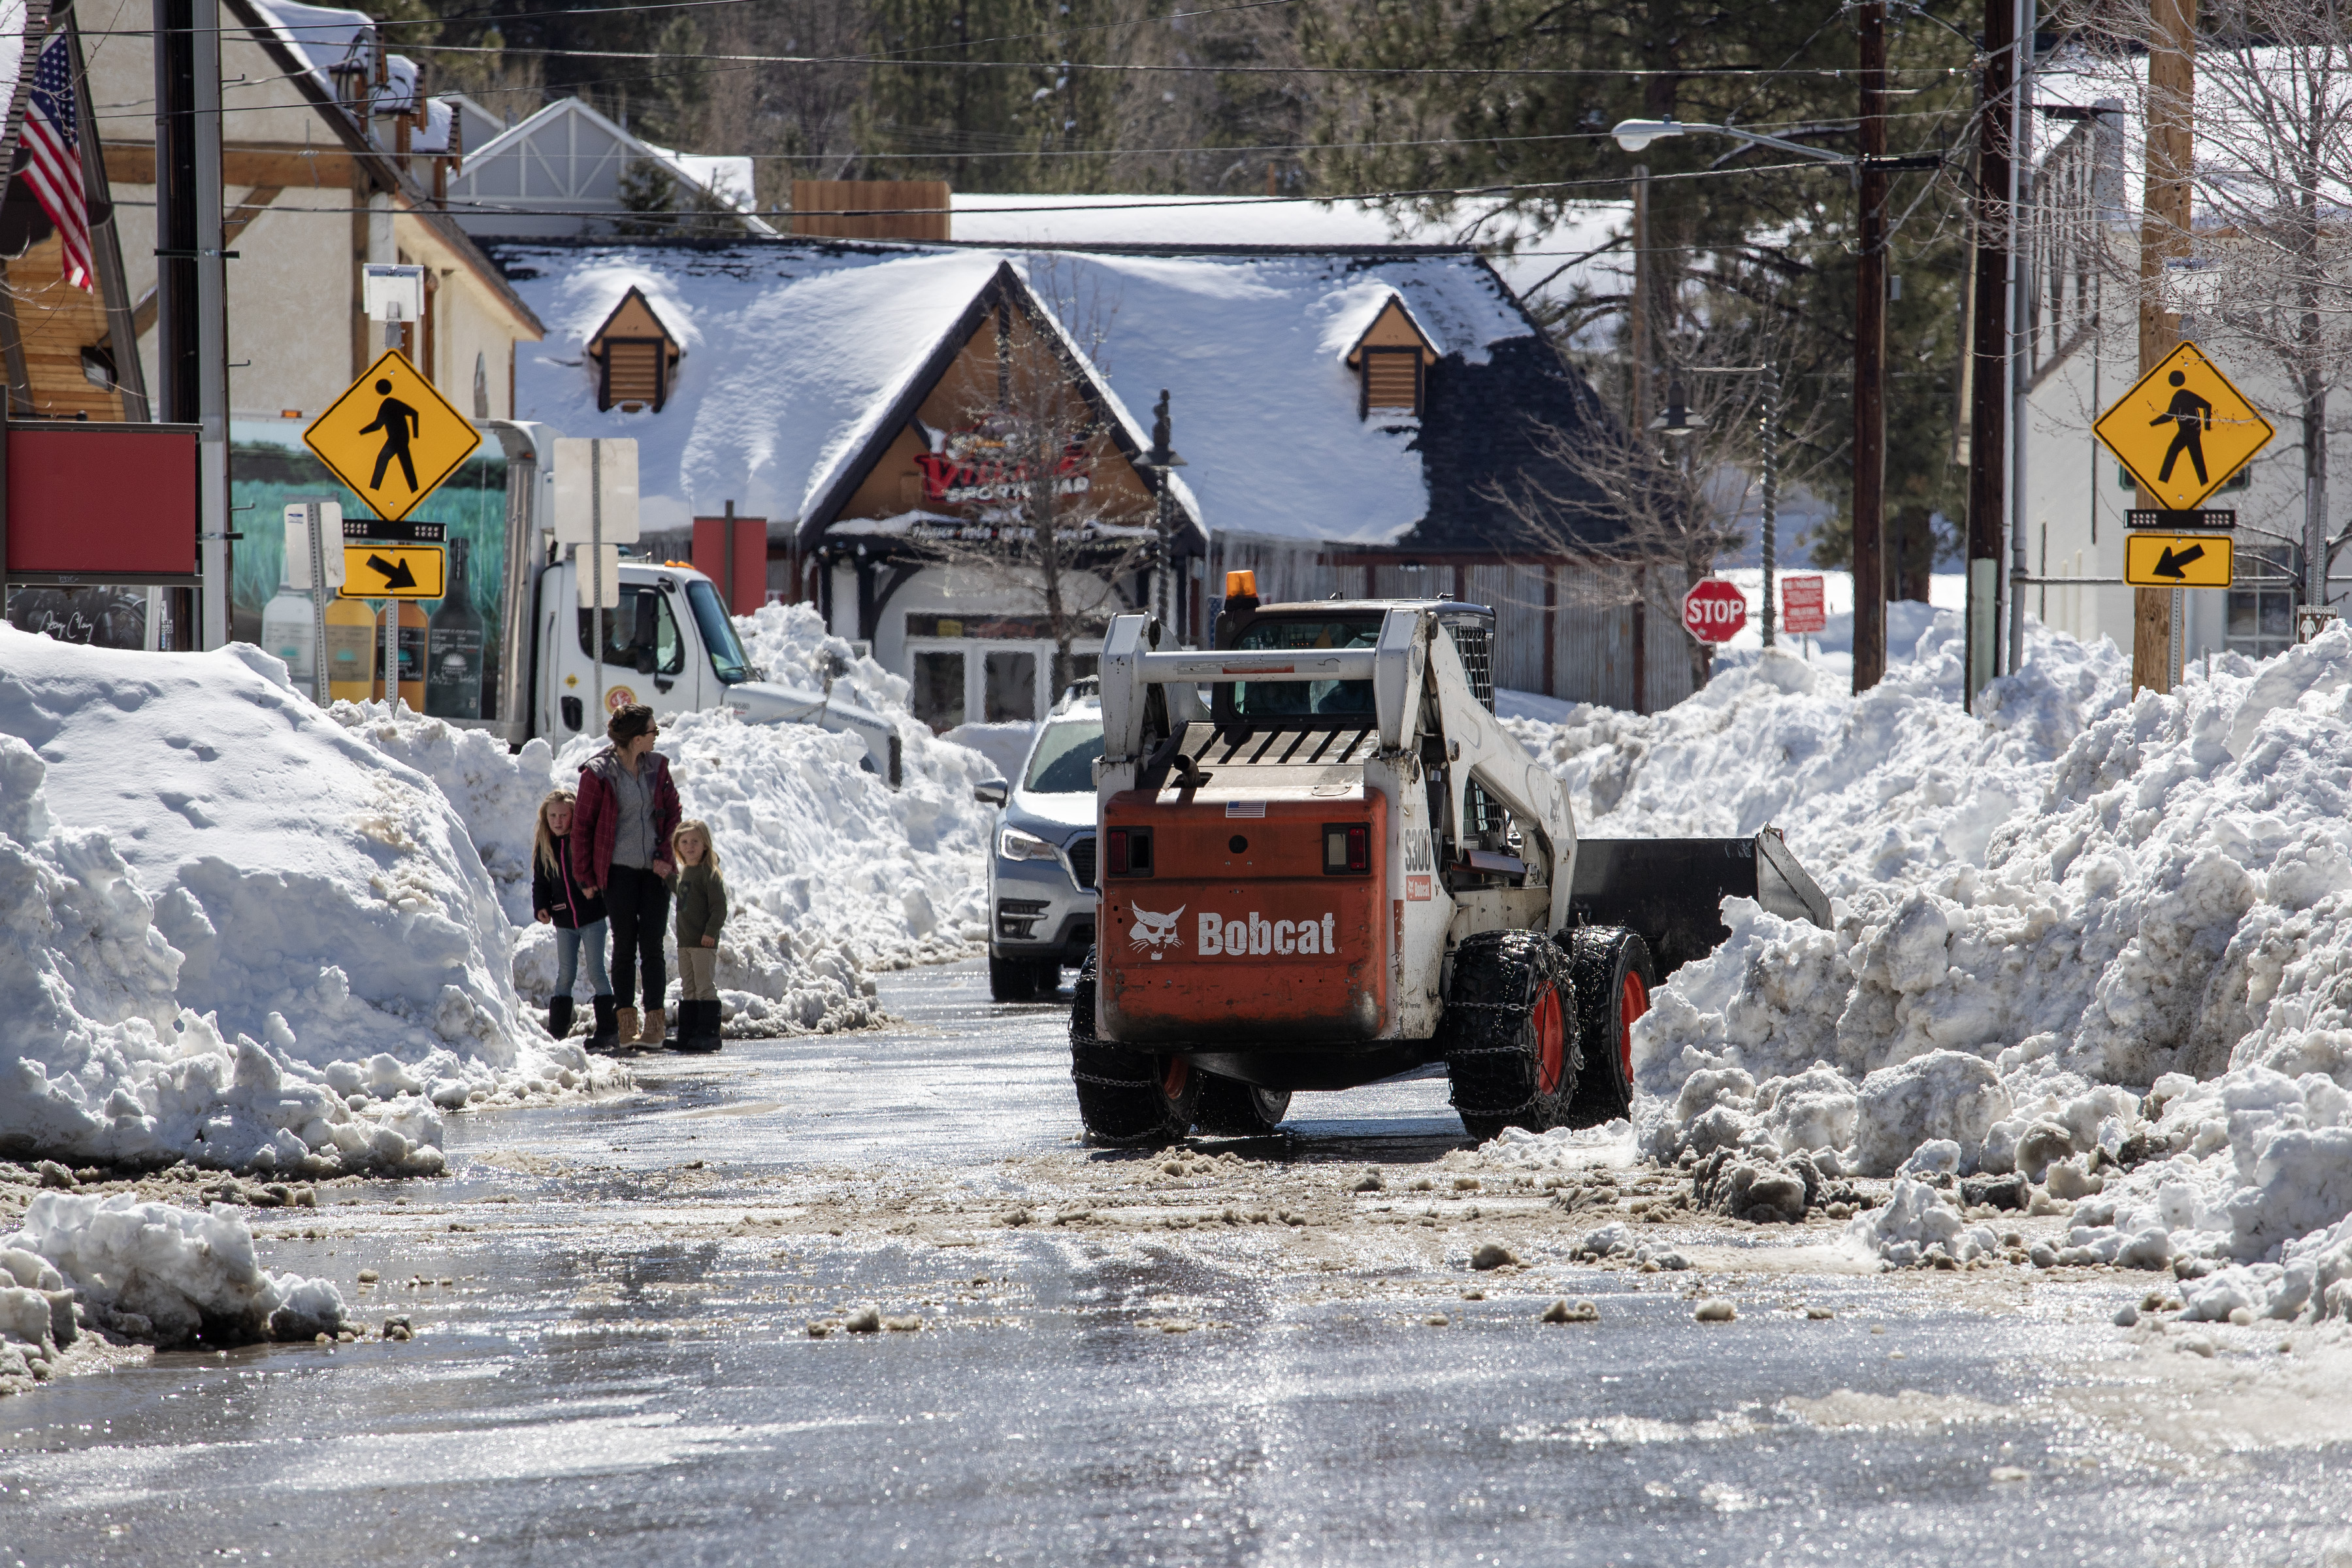 لا تزال شوارع بحيرة بيج بير مغطاة بالثلوج بعد العواصف المتتالية التي غطت مجتمعات جبل سان برناردينو يوم الجمعة 3 مارس 2023 في بحيرة بيج بير ، كاليفورنيا.  (بريان فان دير بروغ - لوس أنجلوس تايمز عبر Getty Images)